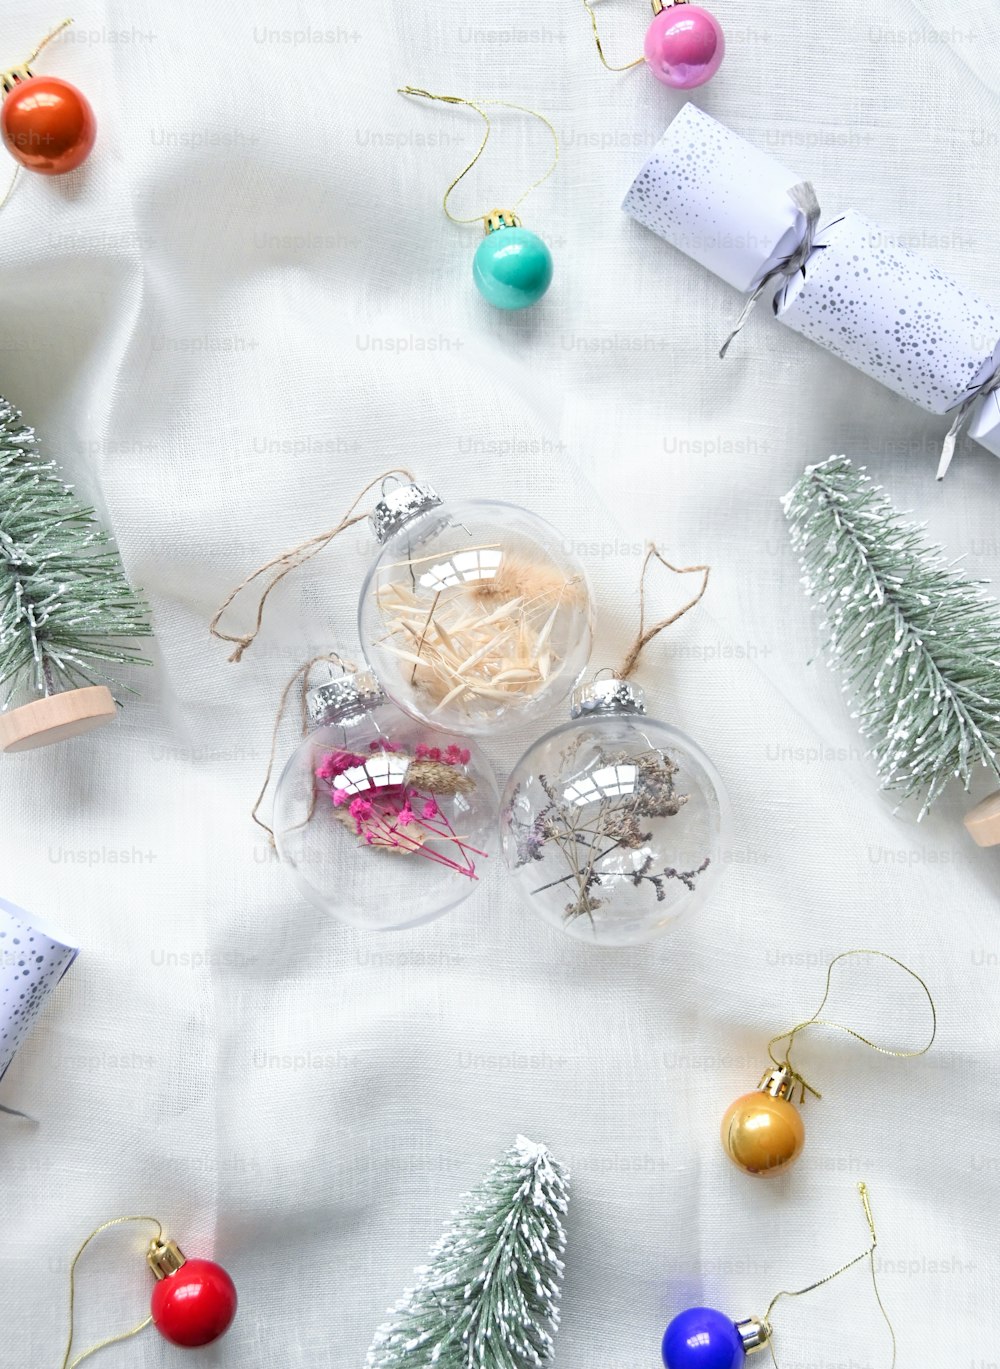 Une table blanche surmontée de décorations et de cadeaux de Noël